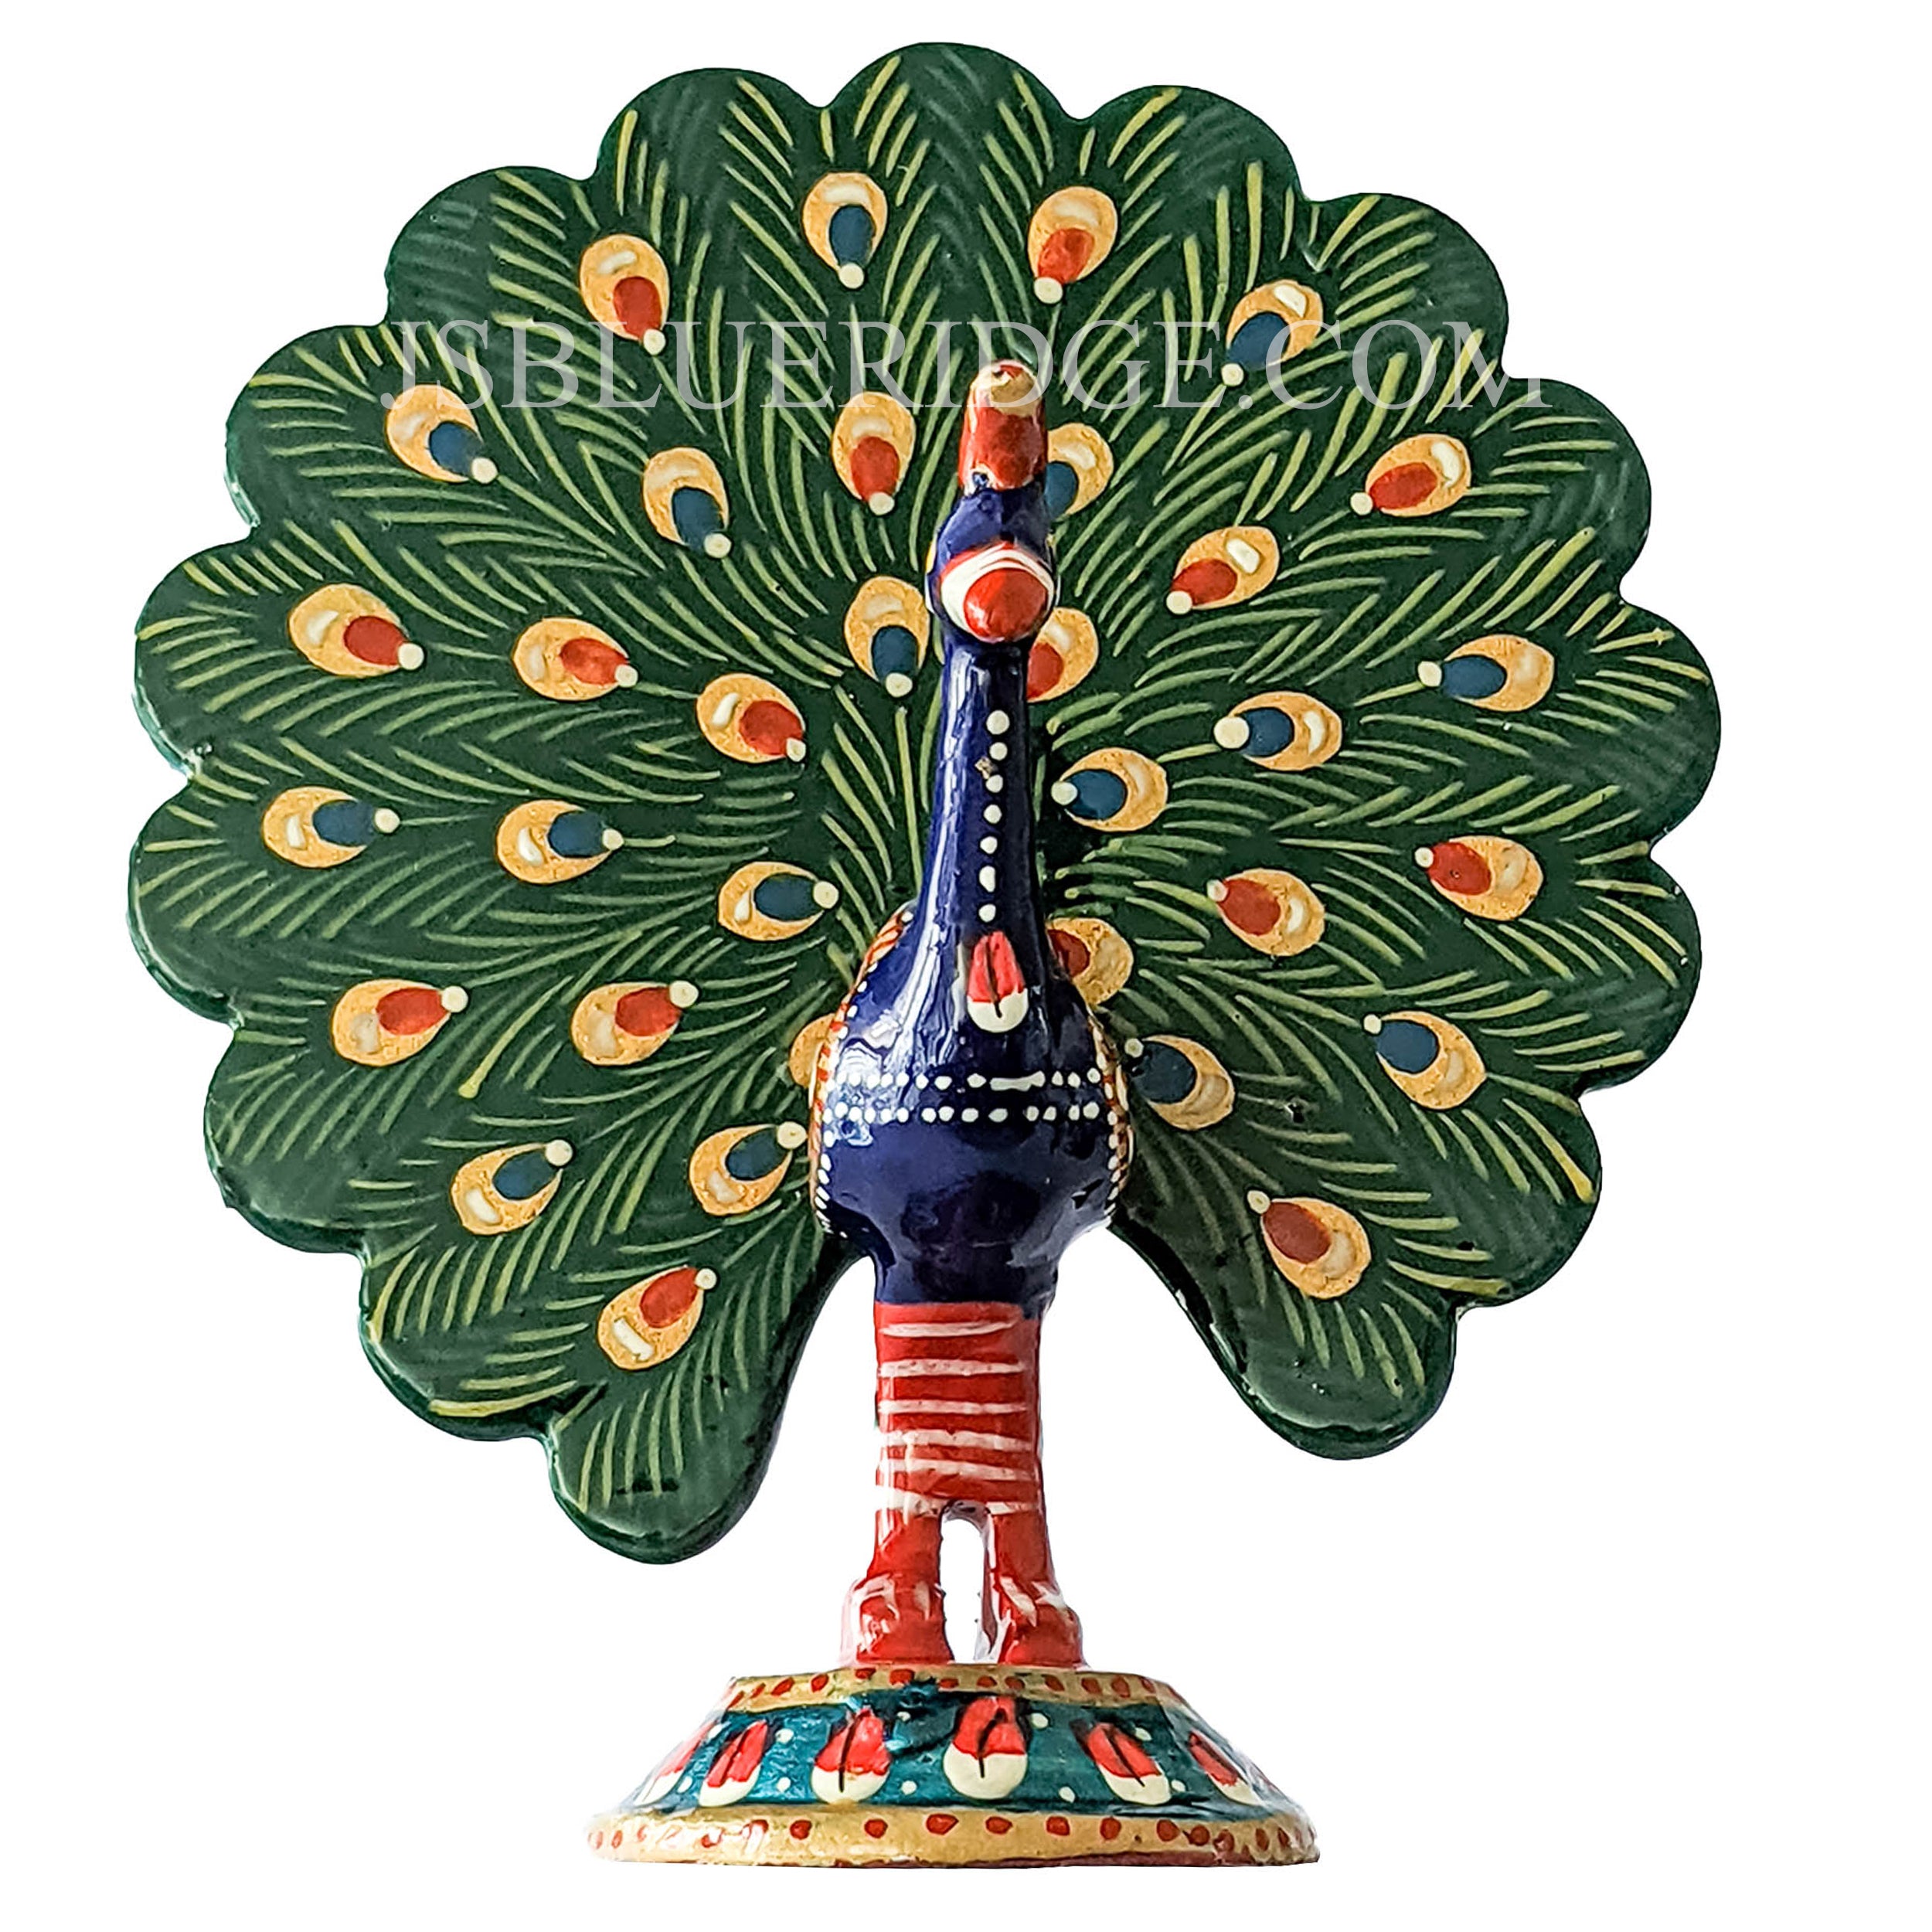 Wooden Animal Meena Statues - Assorted